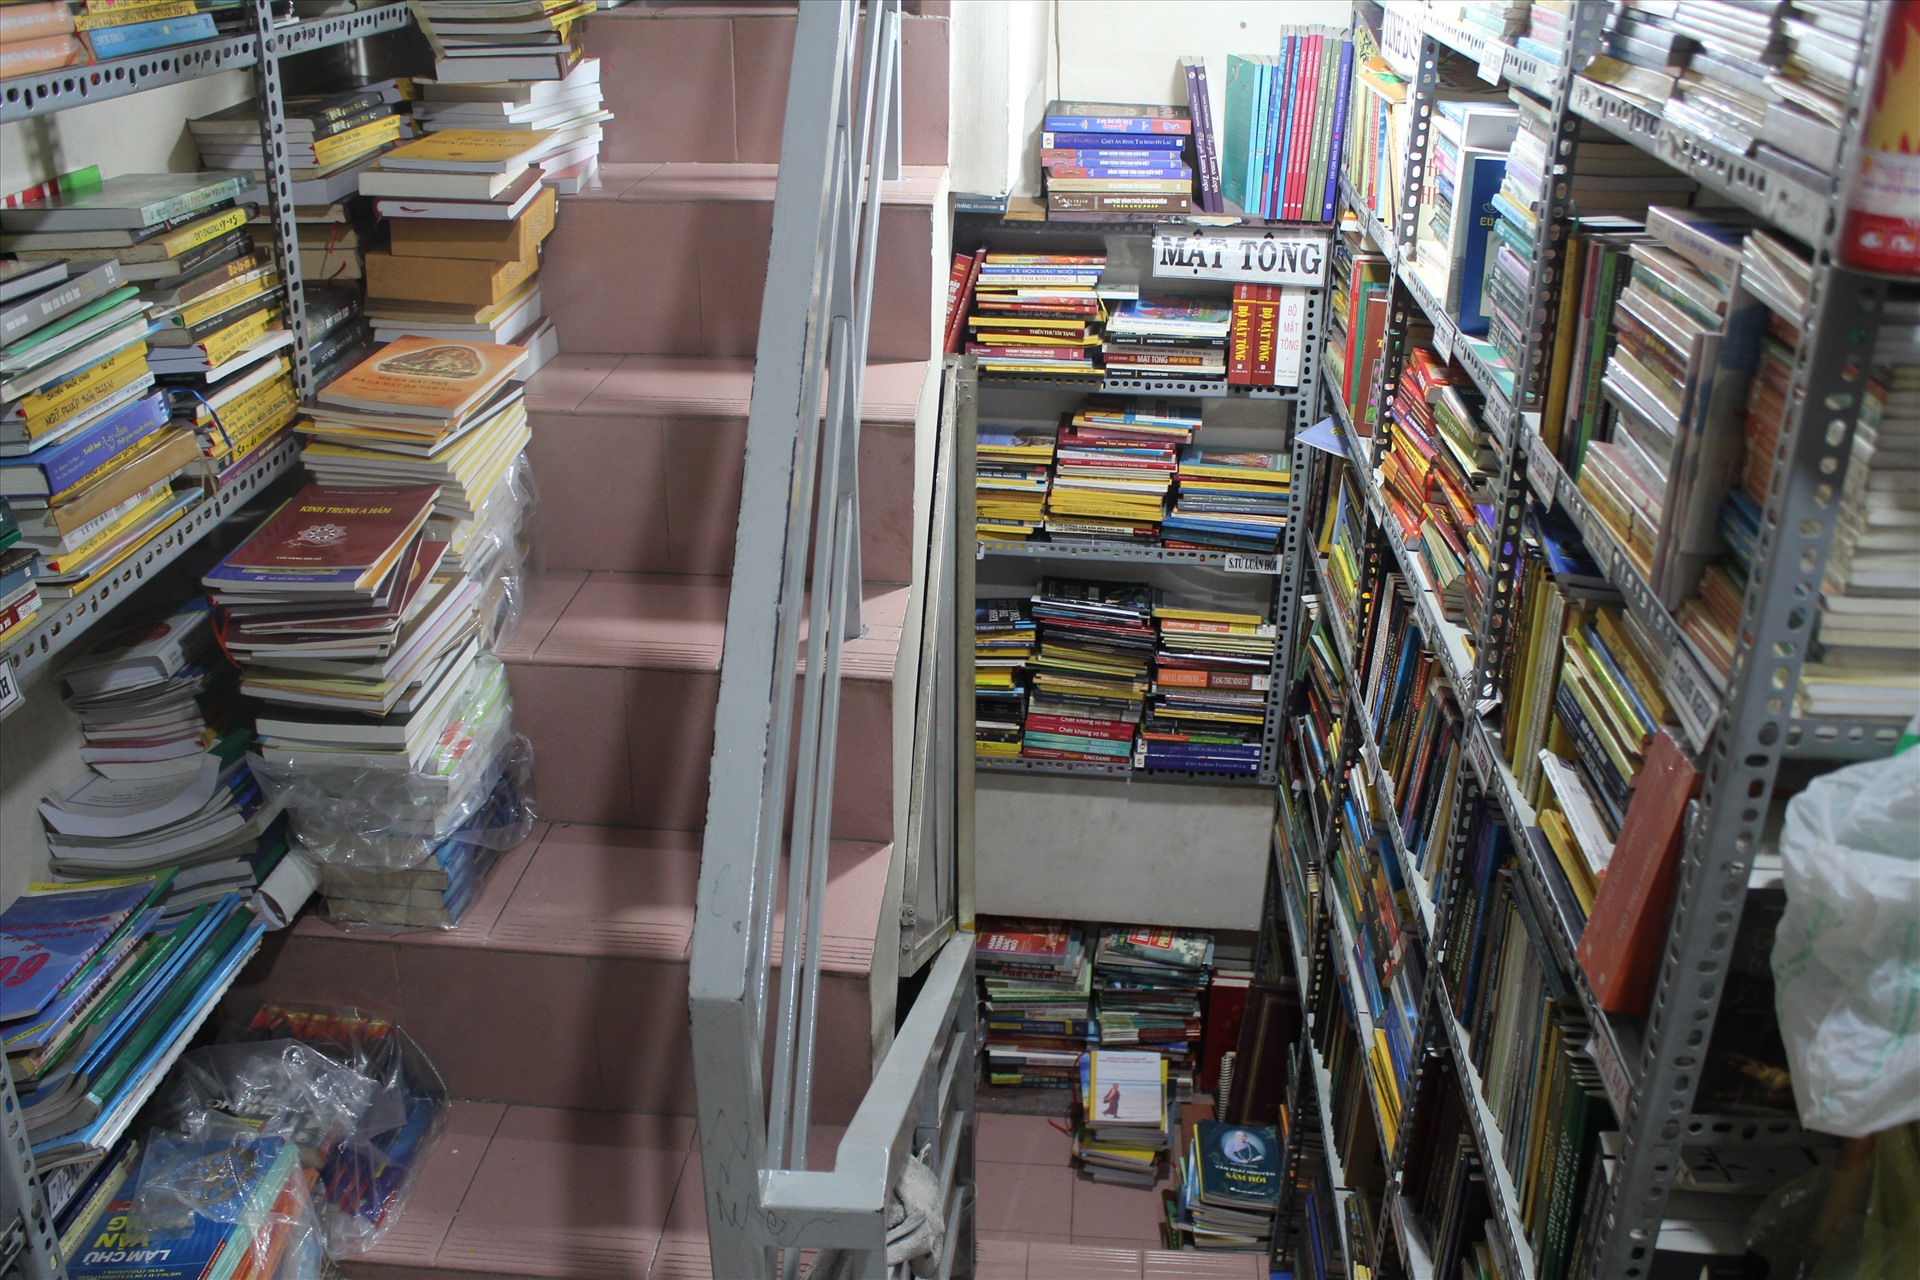 Do tiệm sách khá chật chội, số lượng đầu sách không ngừng tăng lên nên ông Cần phải tận dụng cả những lối đi ở cầu thang để đặt sách. Ảnh: Chân Phúc